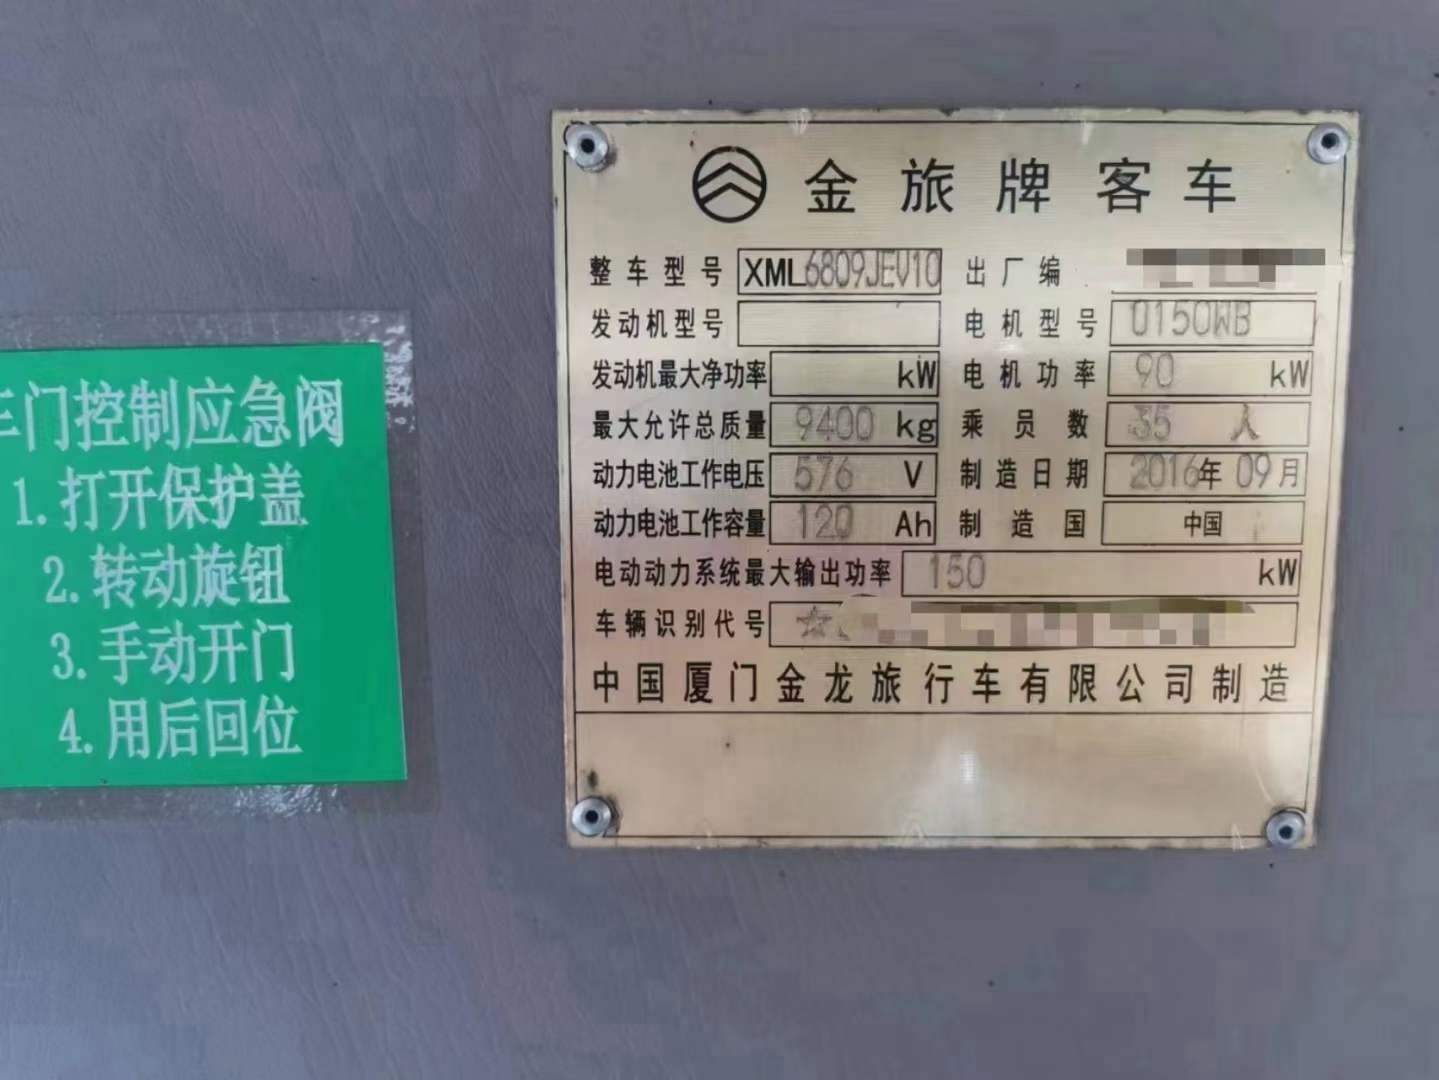 【南阳】 非营运35座宁德时代电池金旅6809新能源电车 价格7.58万 二手车